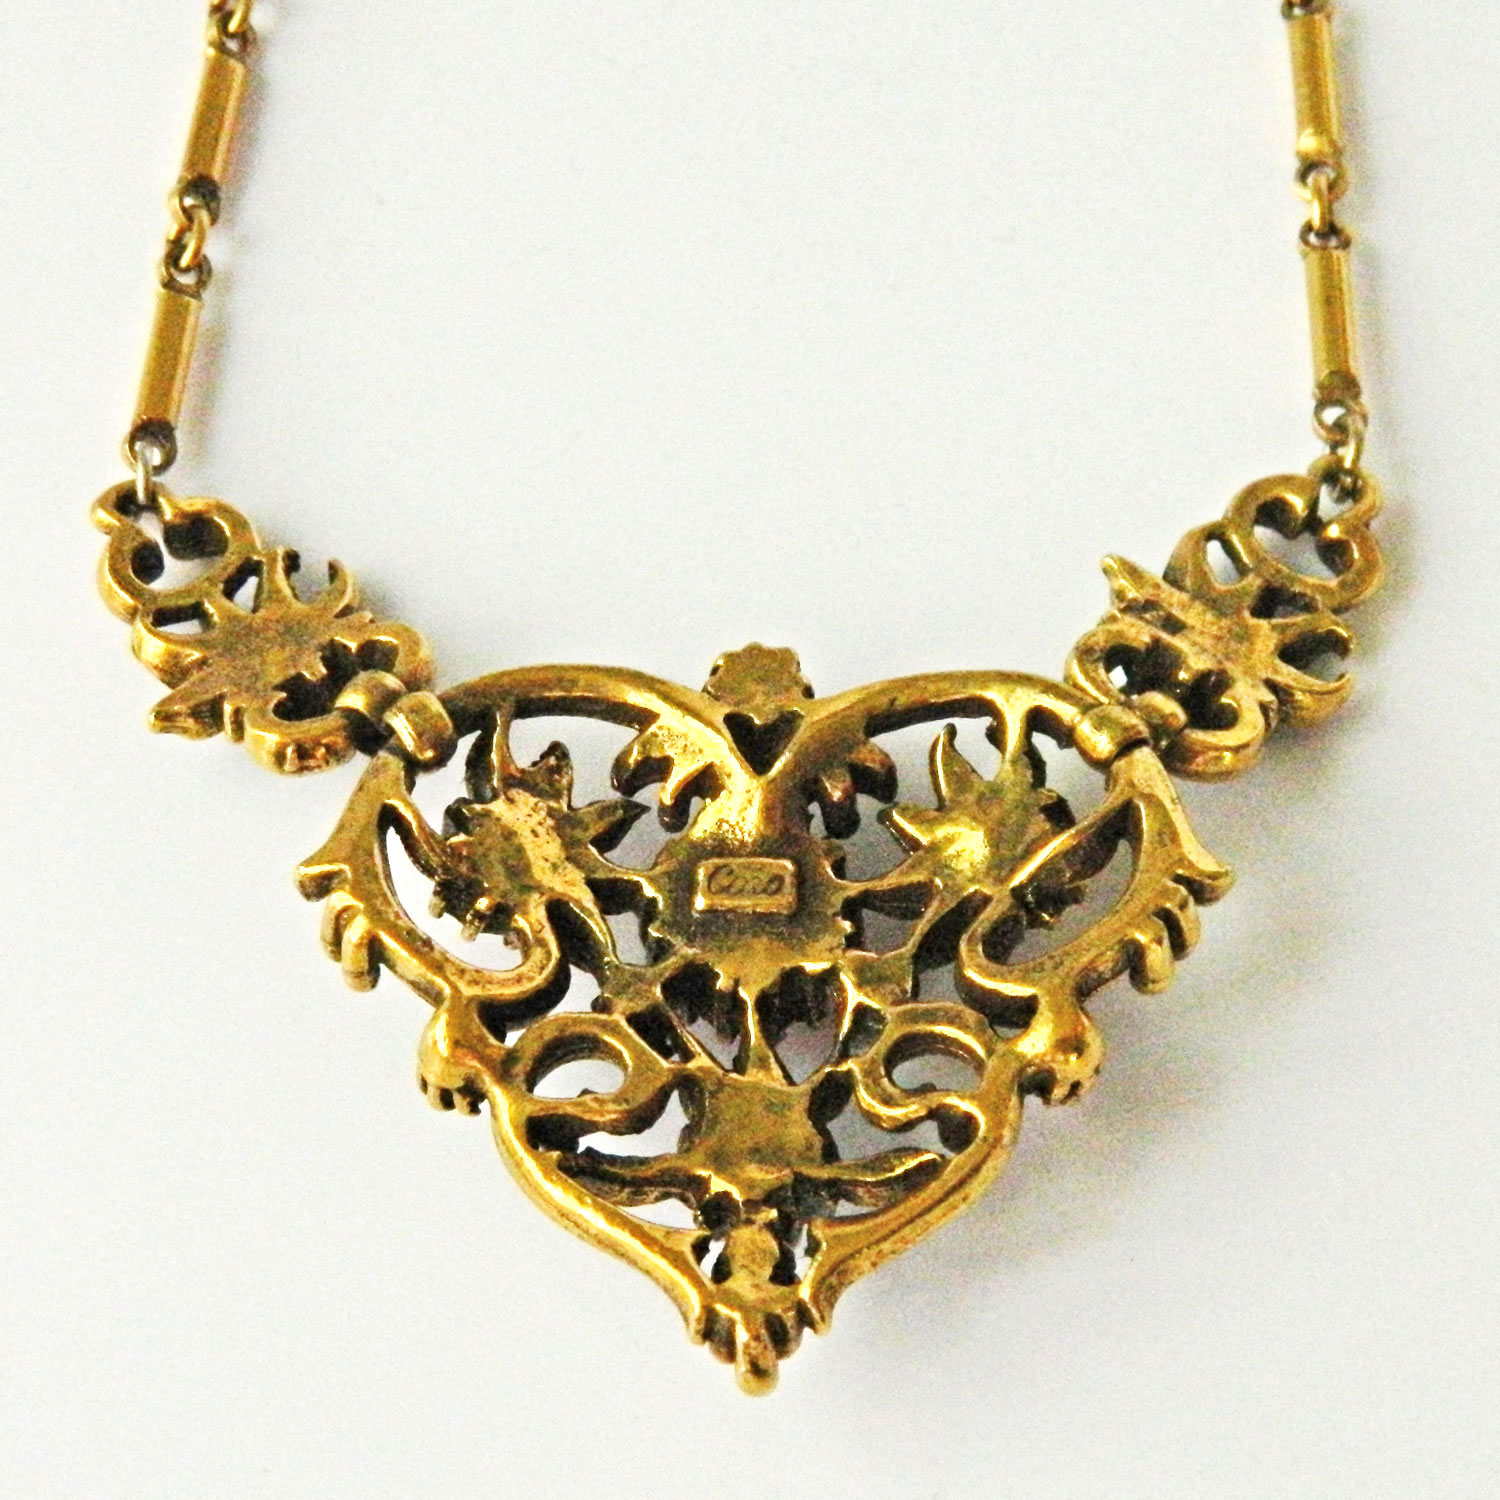 1950s Coro rhinestone necklace